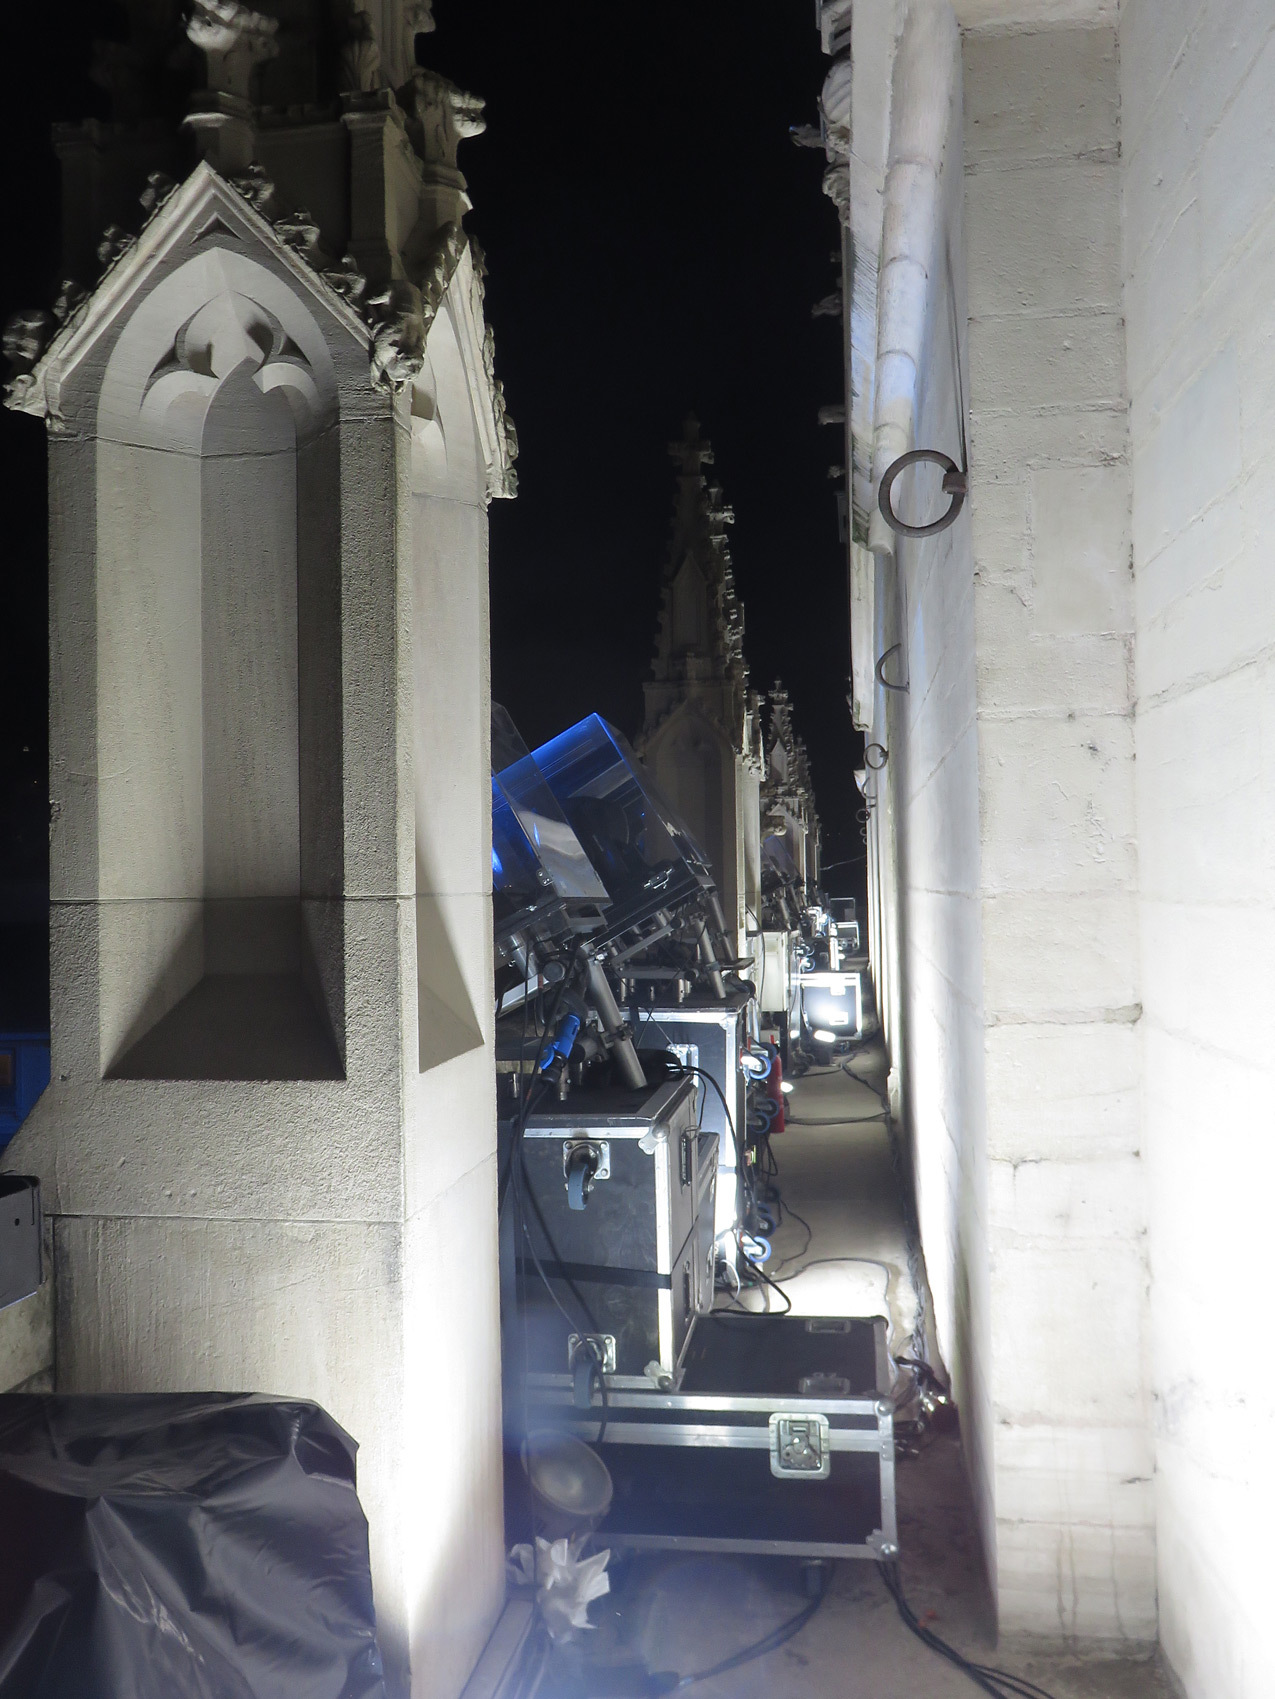 Implantation lumière au balcon, de nuit - Évolutions, cathédrale Saint-Jean - Fête des lumières 2016, Lyon, France